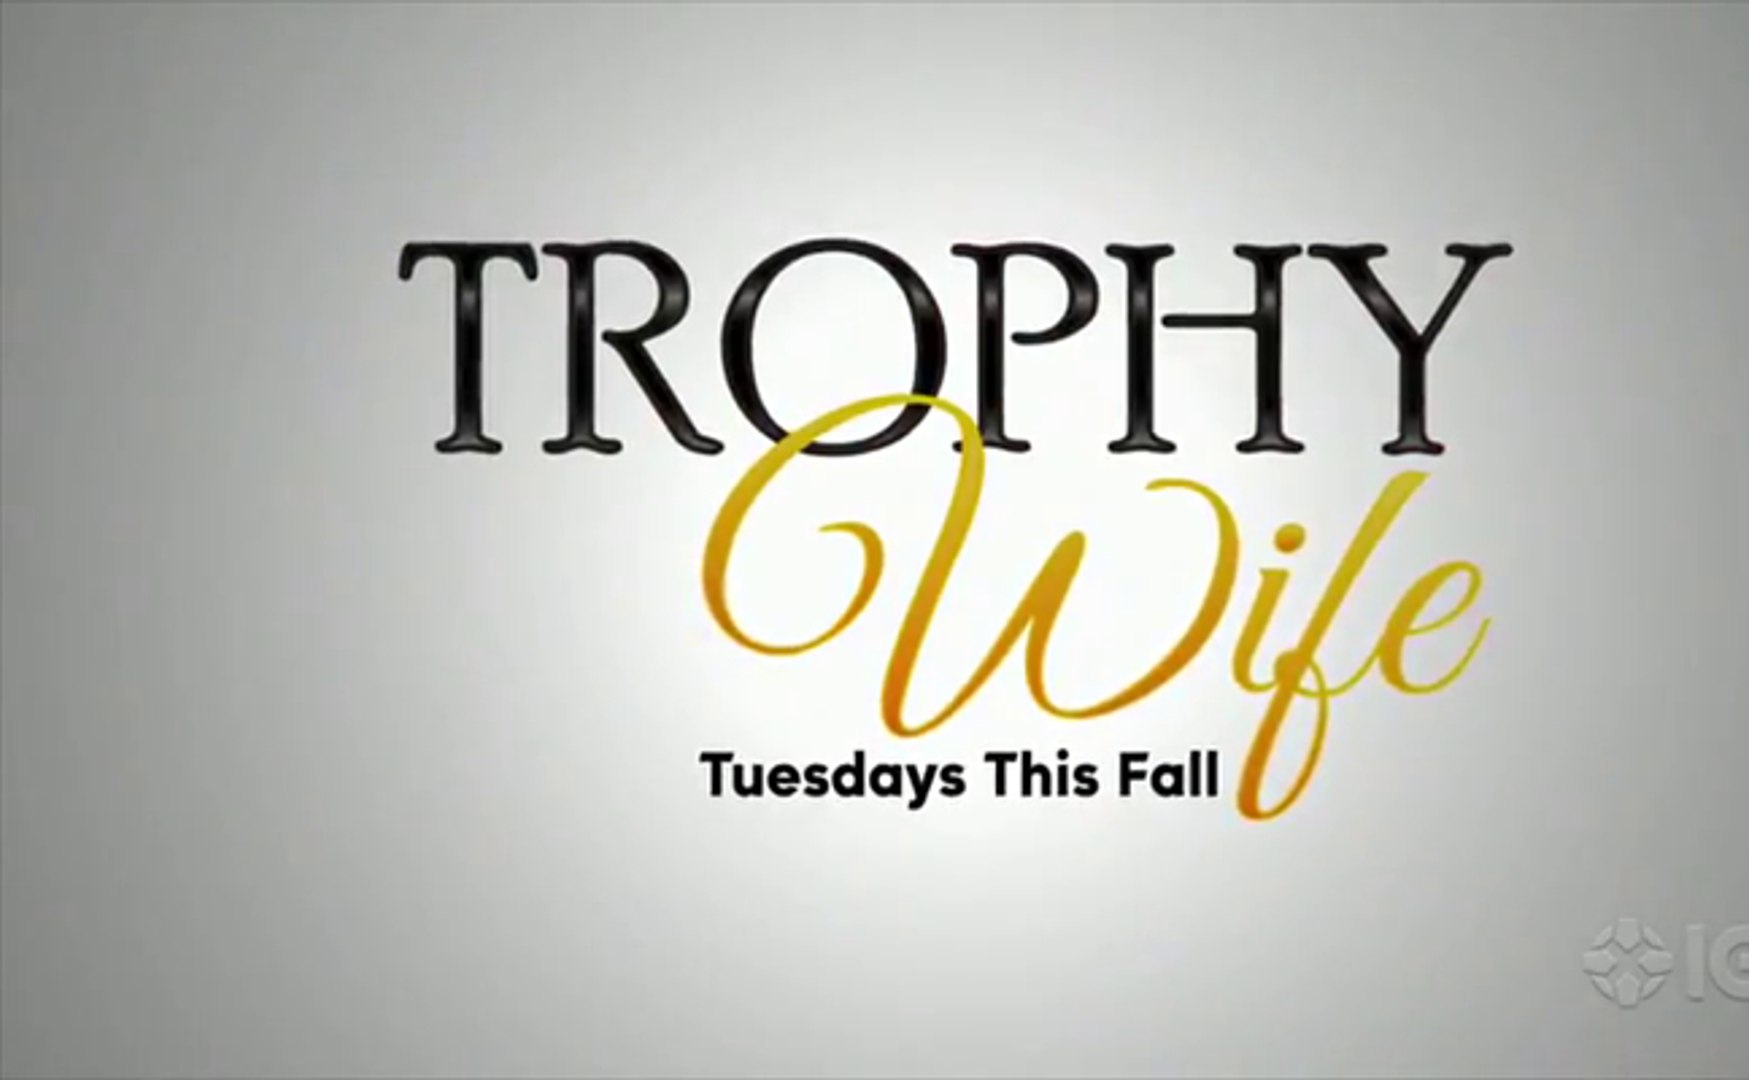 Trailer trophy wife Trophy Wife